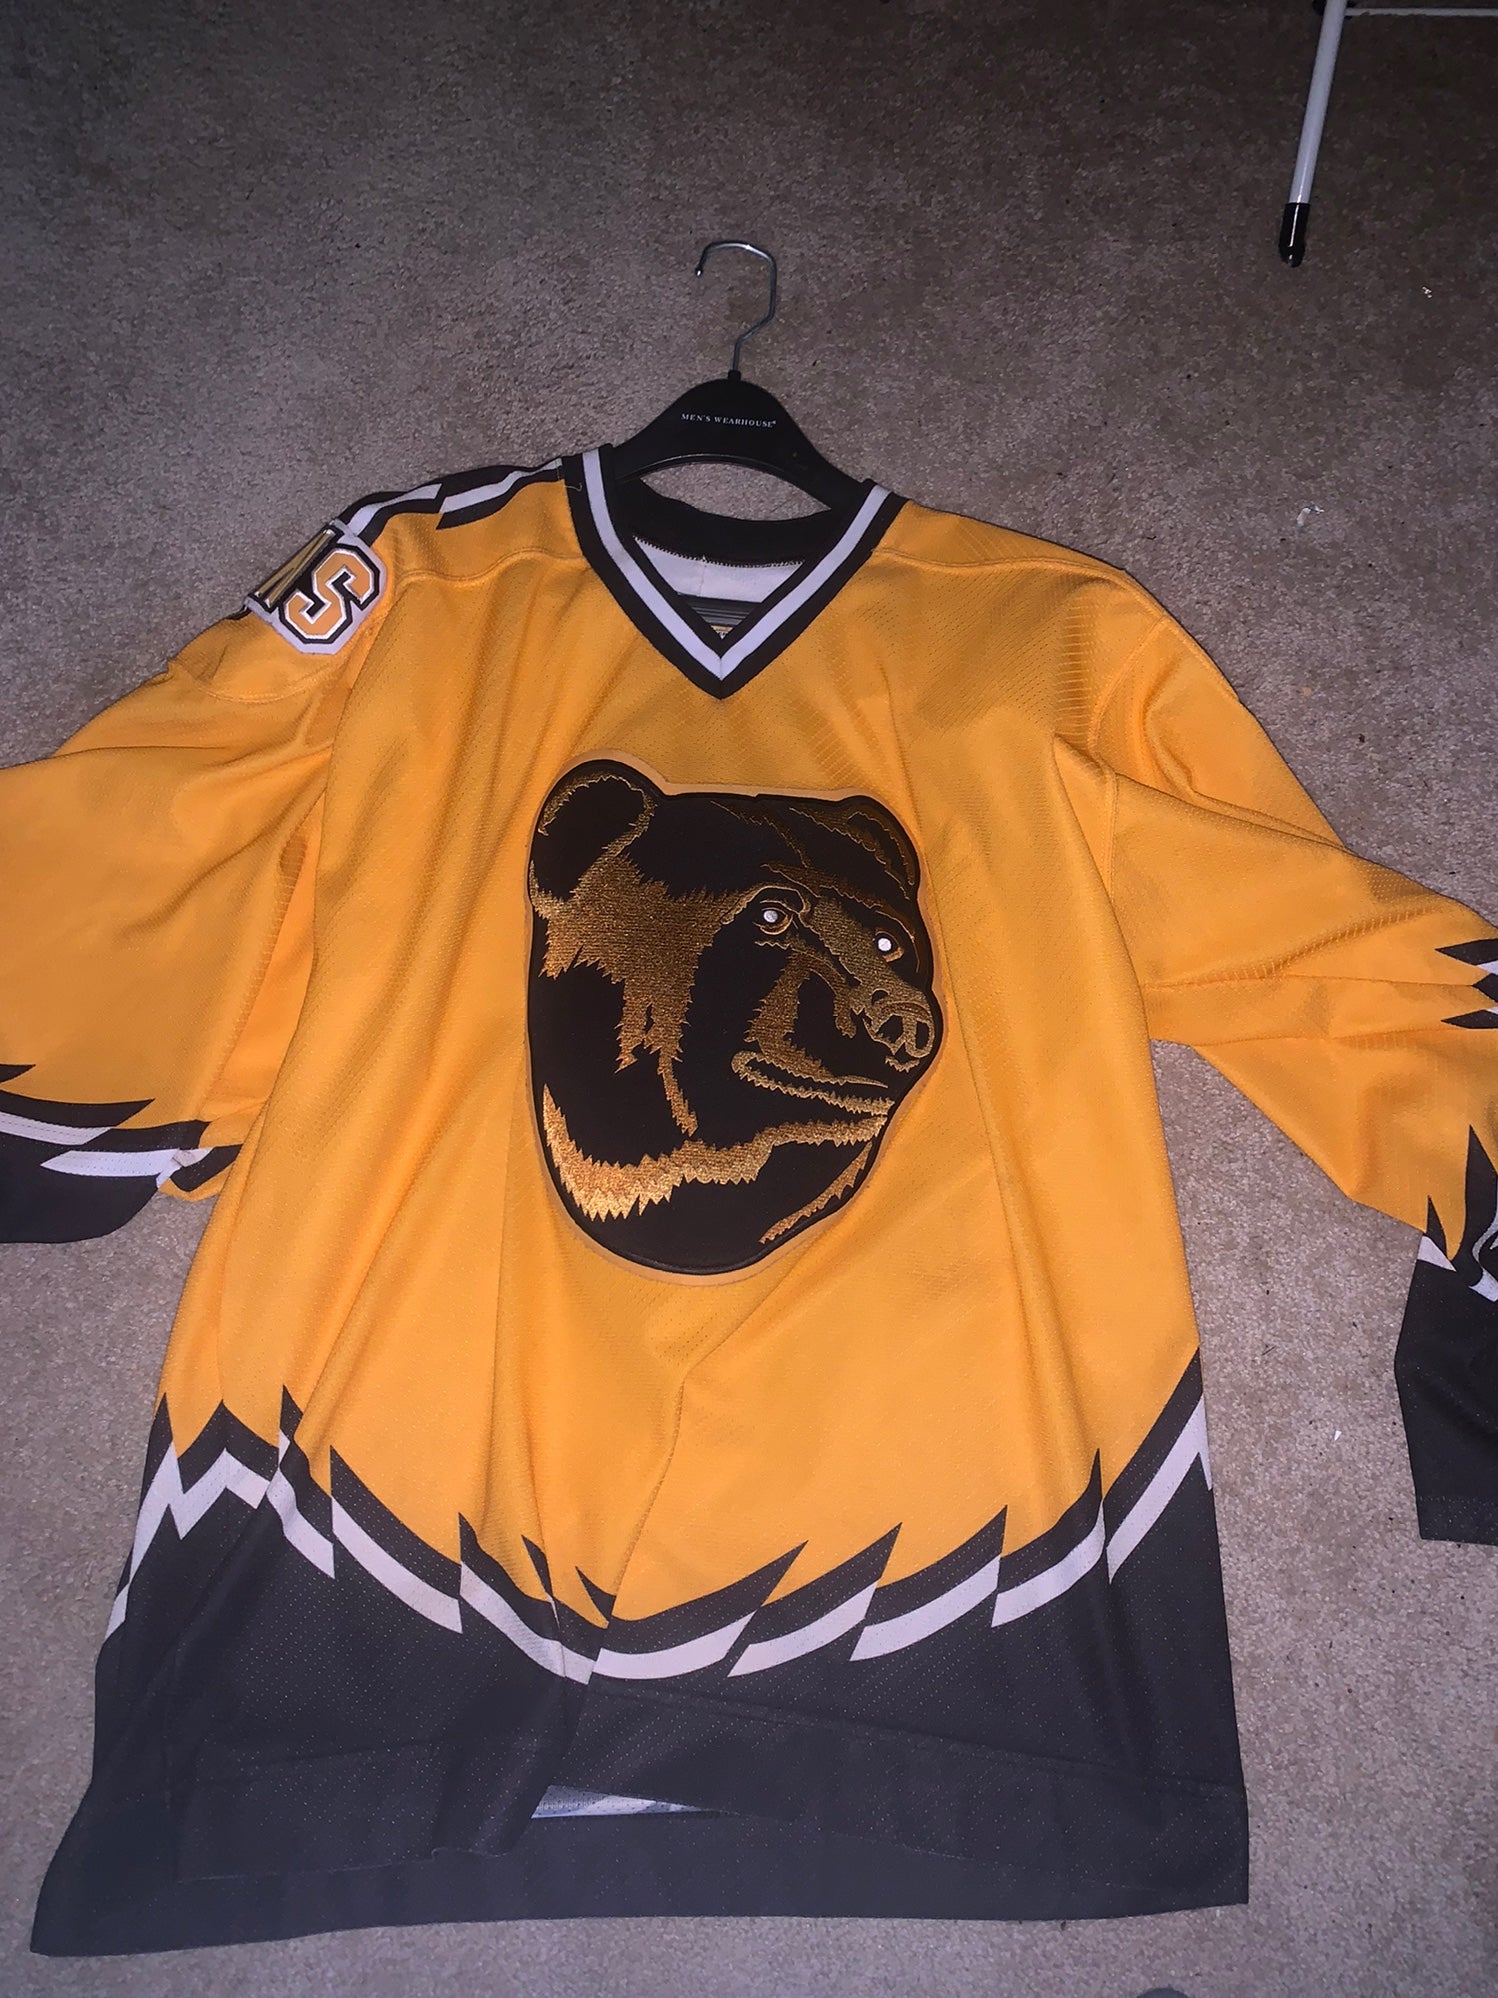 Boston Bruins Koho Authentic Pooh Bear Hockey Jersey Medium